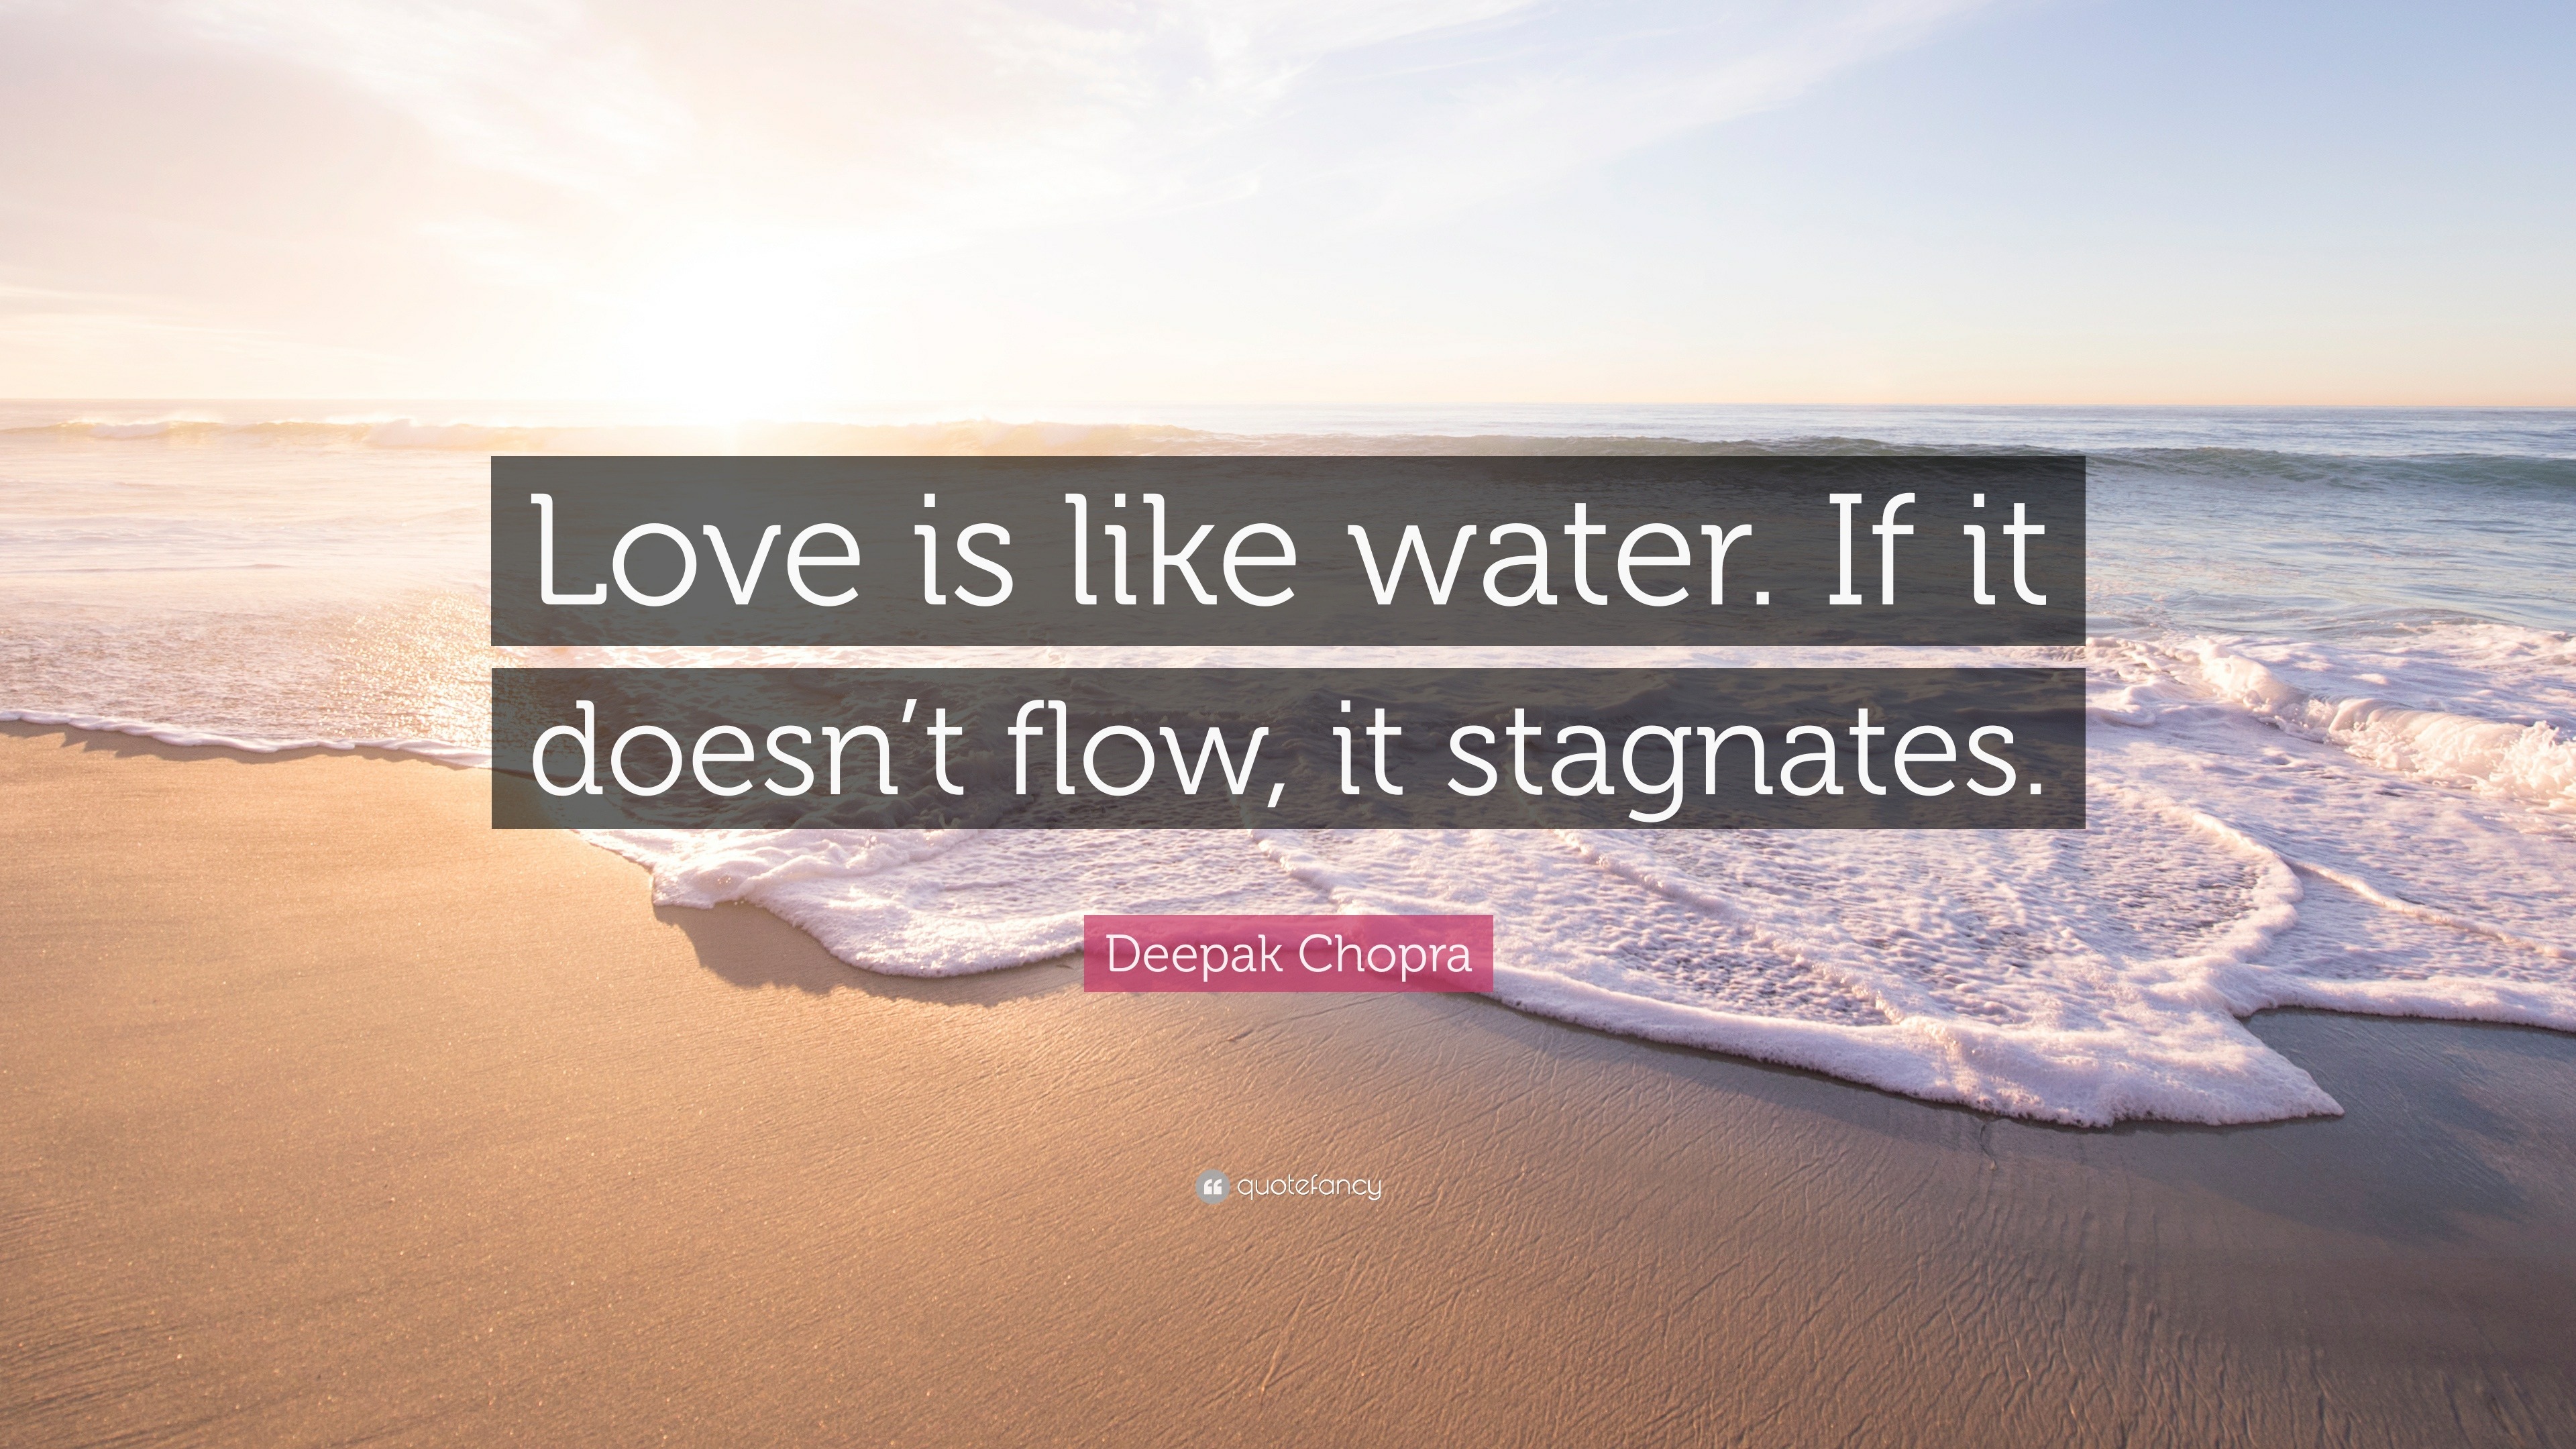 Deepak Chopra Quote “Love is like water If it doesn t flow